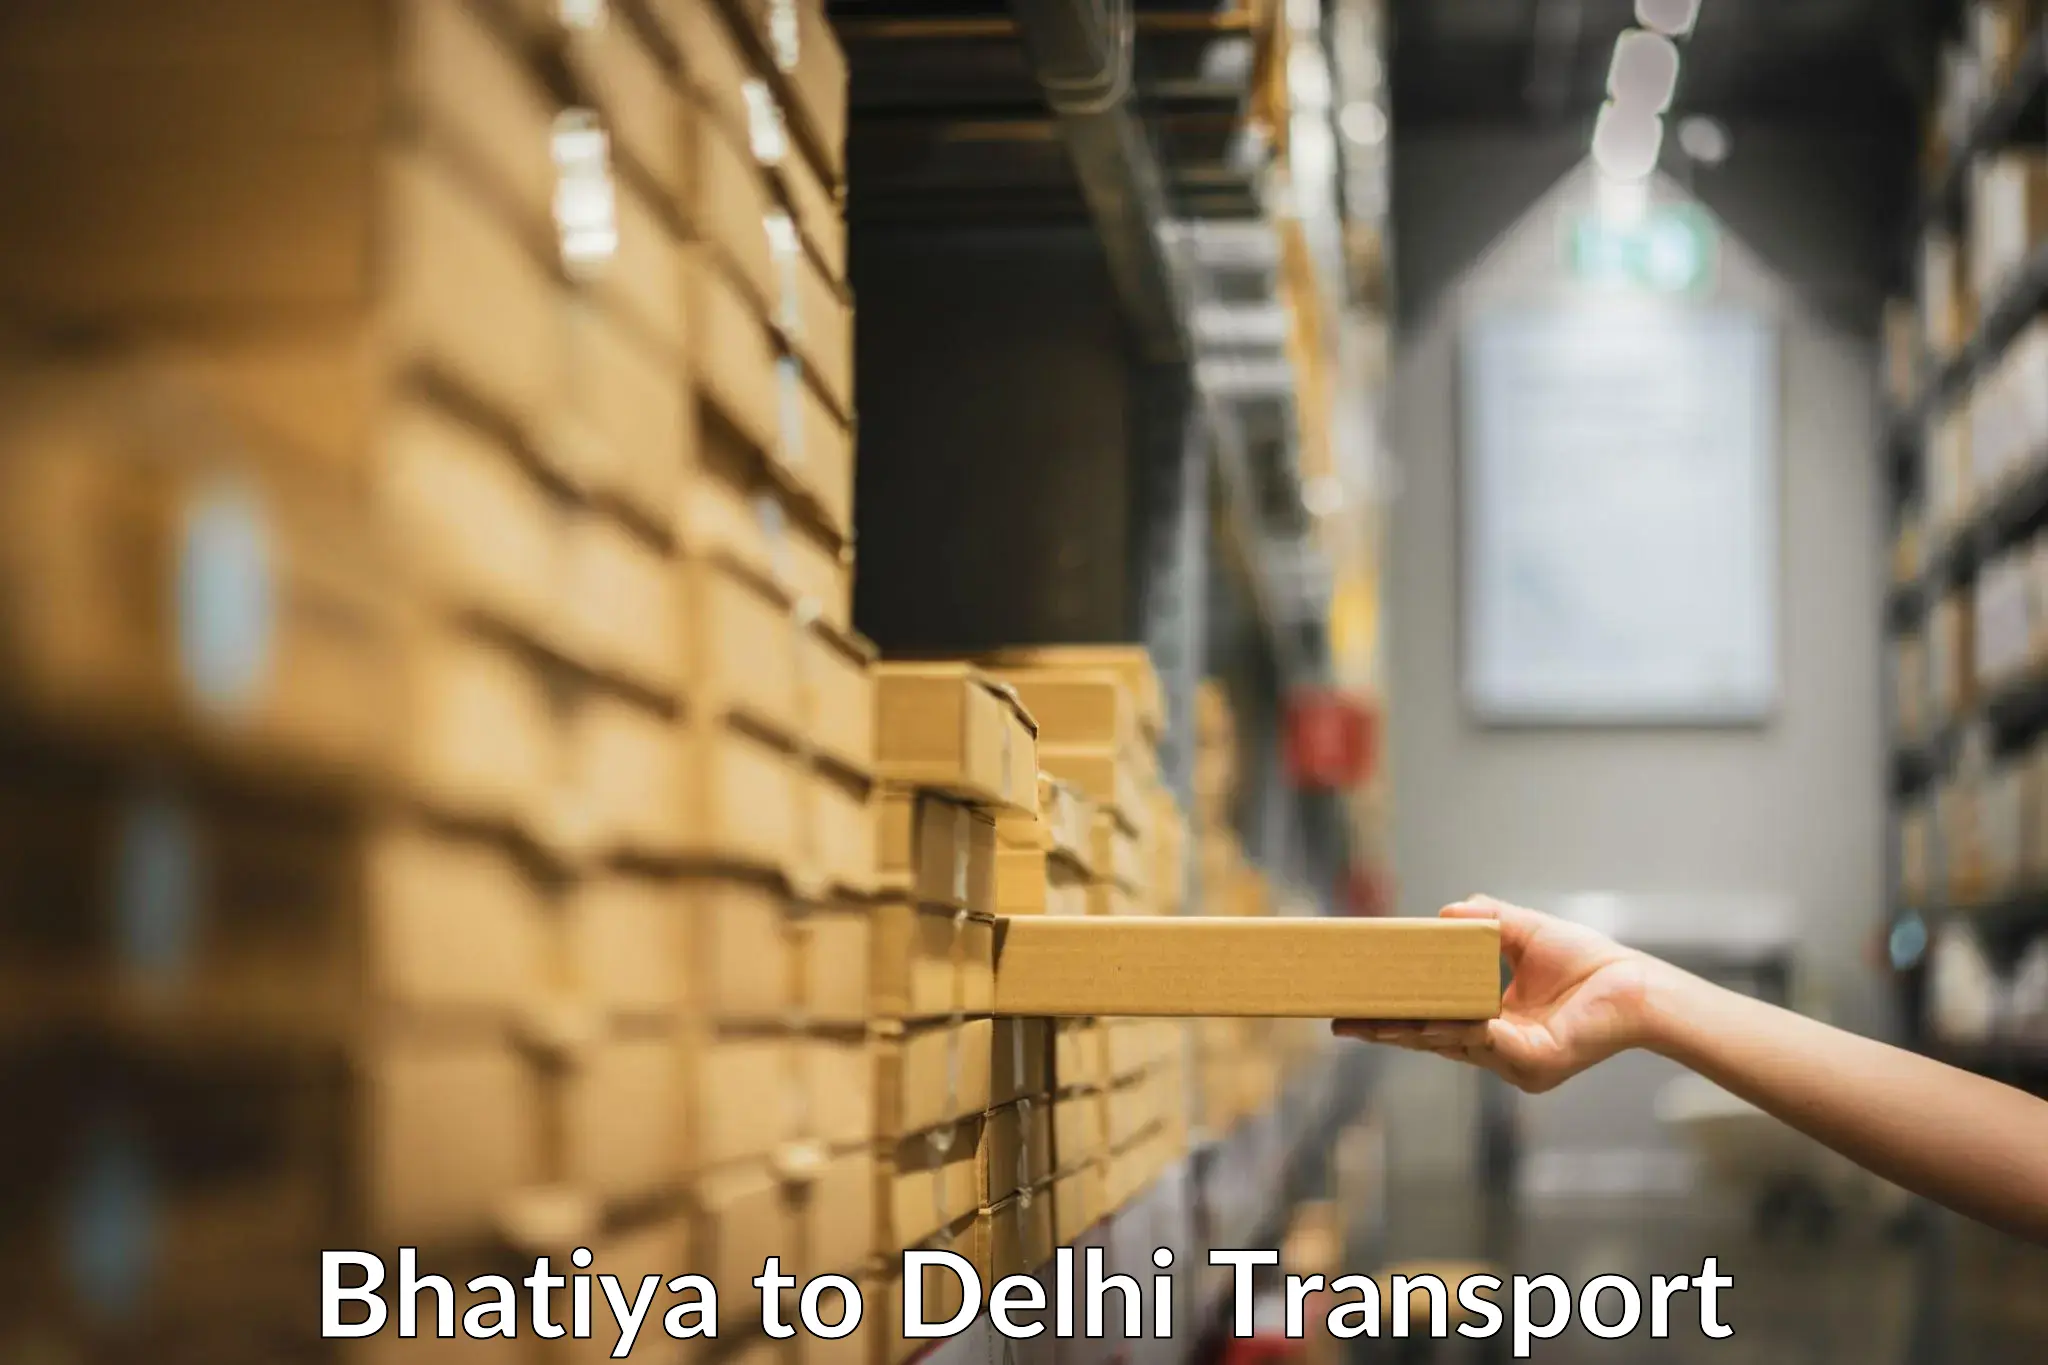 Express transport services Bhatiya to University of Delhi